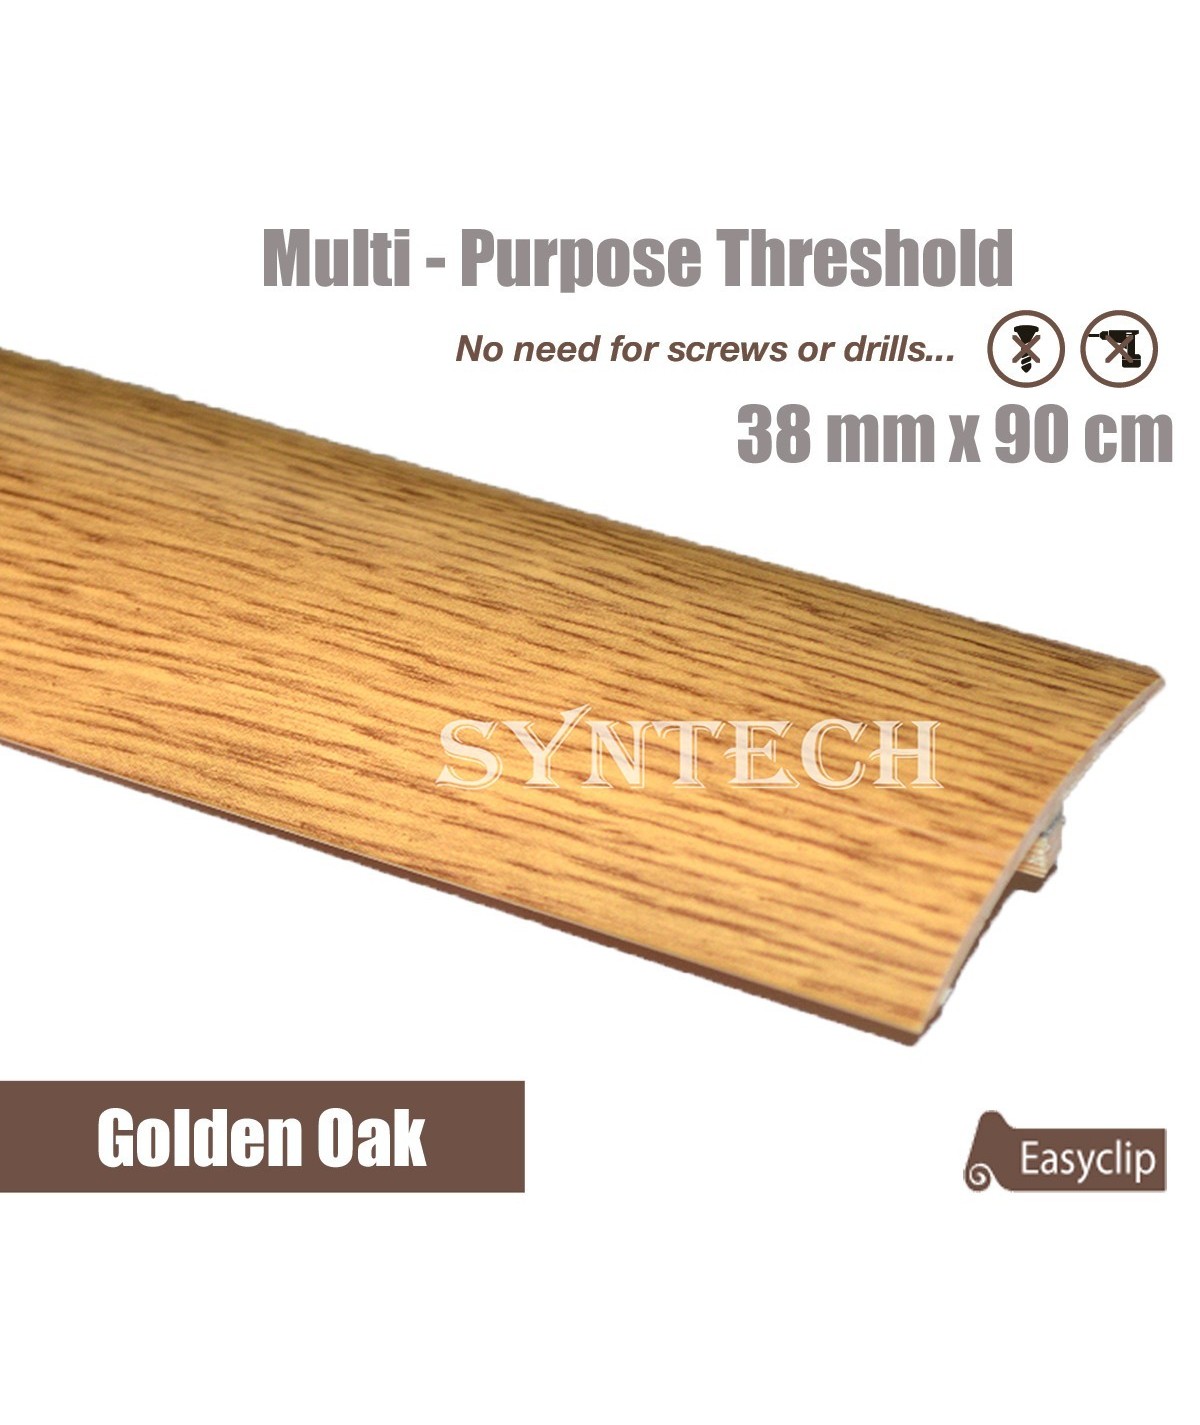 Golden Oak 38mm x 90cm Laminate Door Threshold Adjustable Height/Pivots